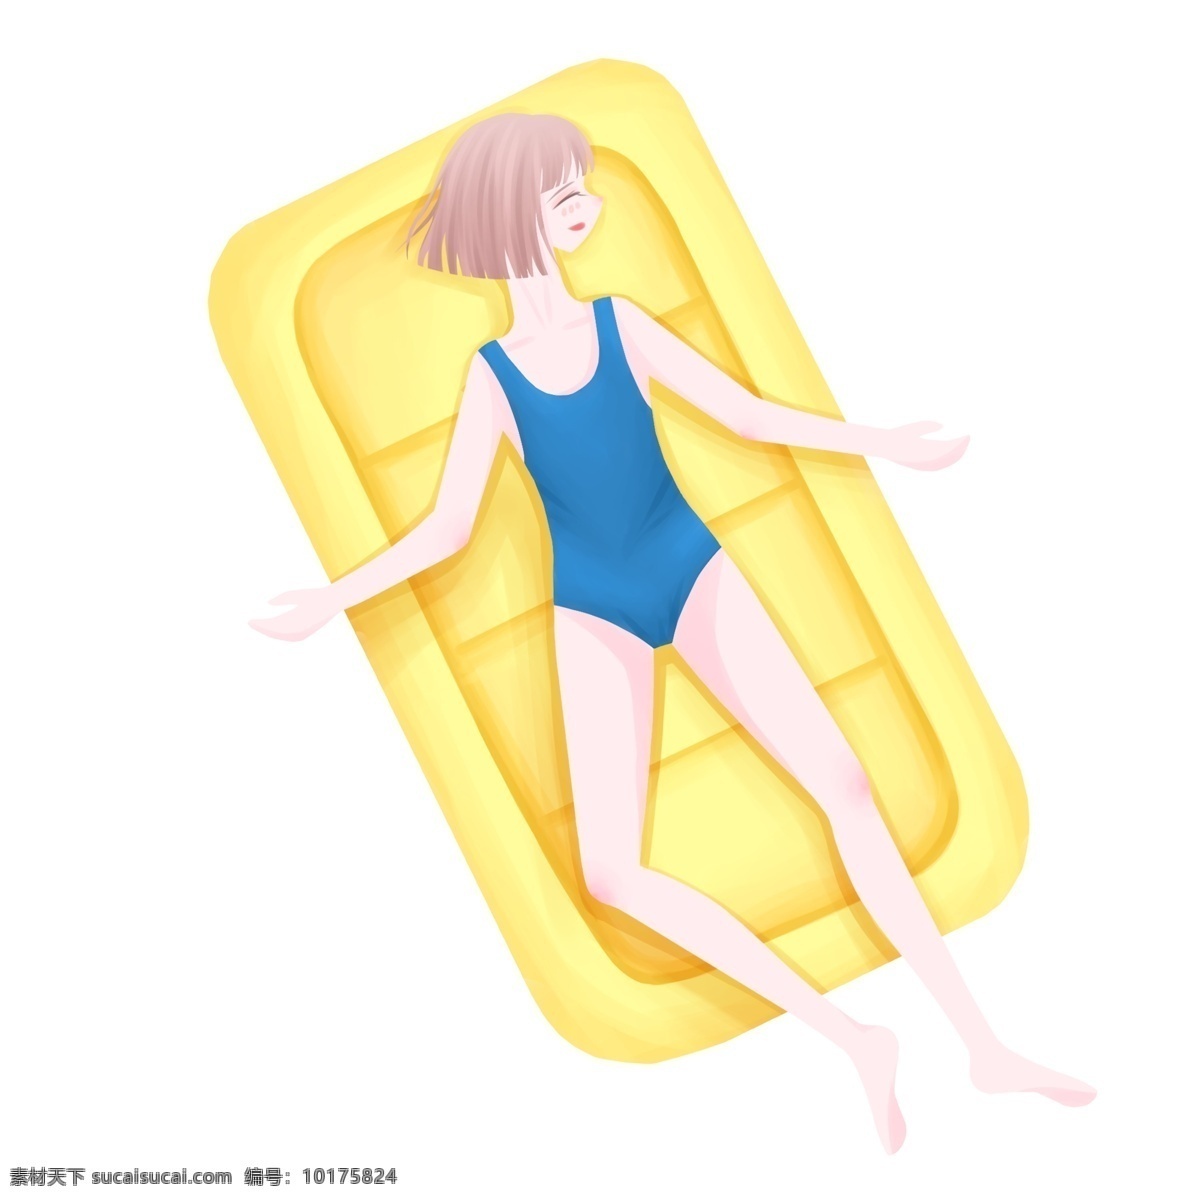 海滩 人物 女孩 晒太阳 沙滩 卡通 彩色 小清新 创意 插画 手绘 元素 现代 简约 装饰 图案